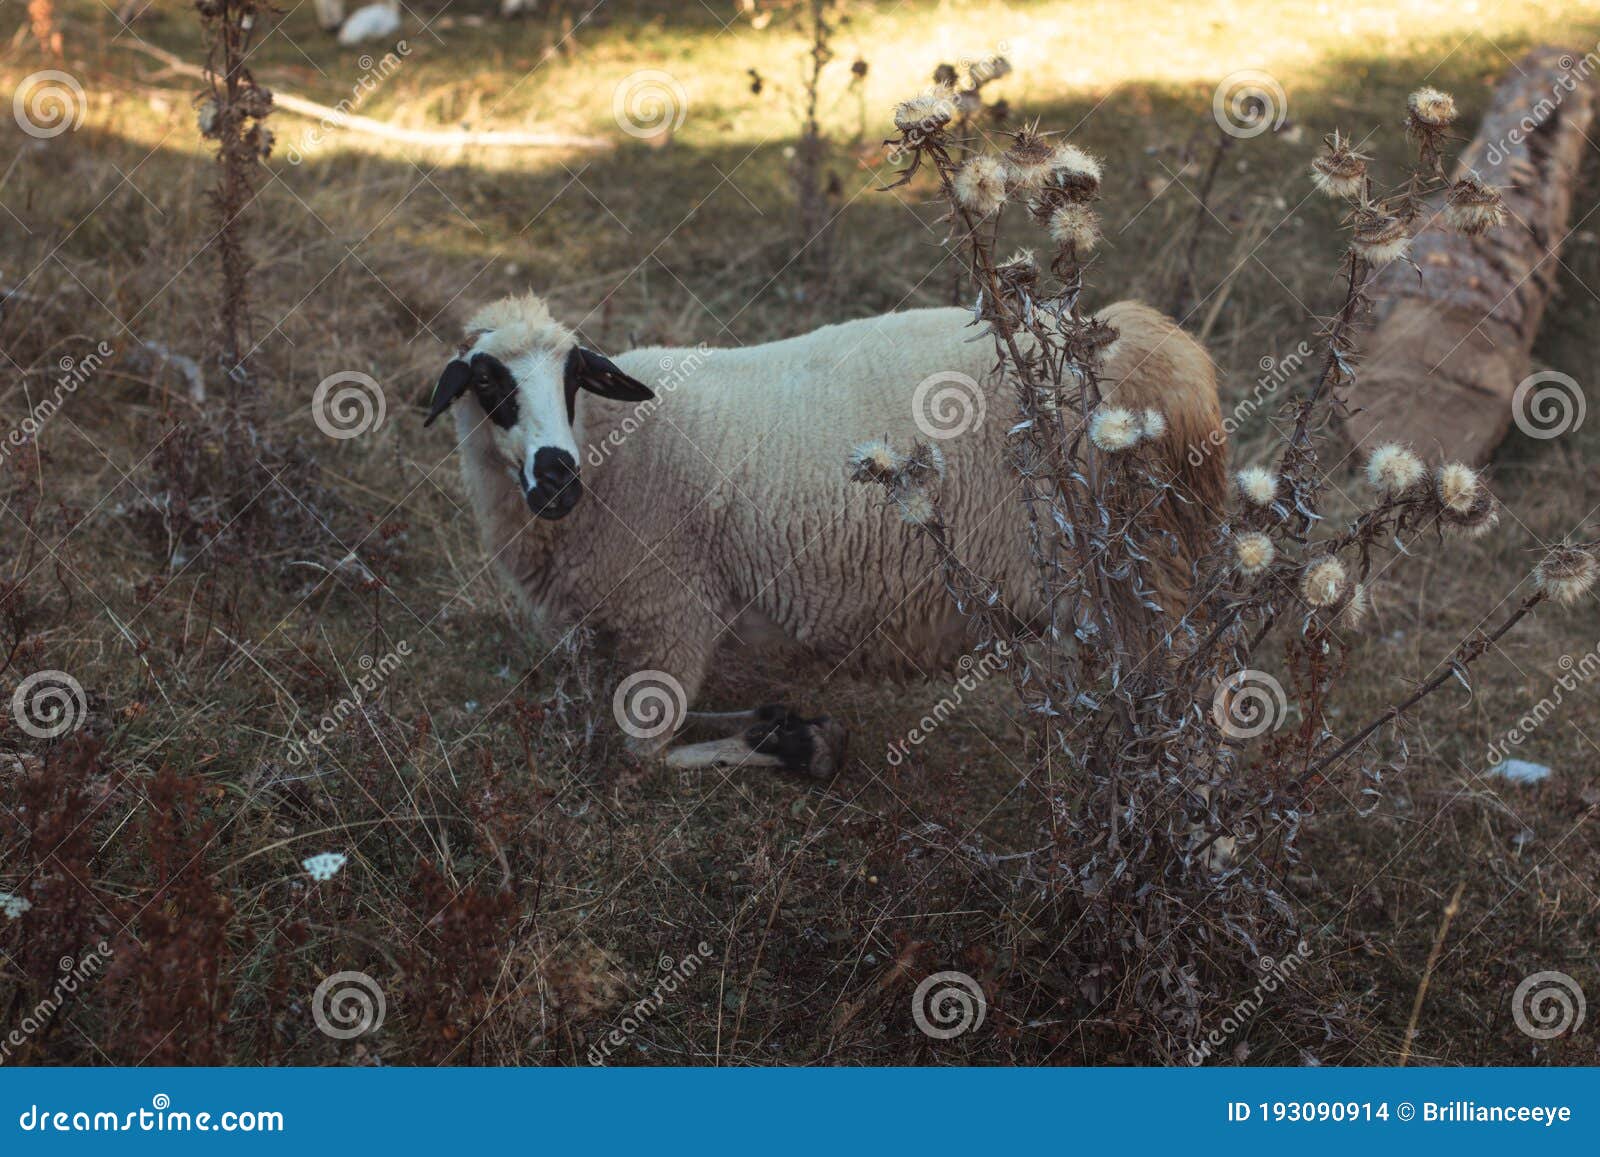 羊吃绿草 库存图片. 图片 包括有 本质, 农村, 草原, 农场, 题头, 逗人喜爱, 吃草, 羊肉, 室外 - 196762289